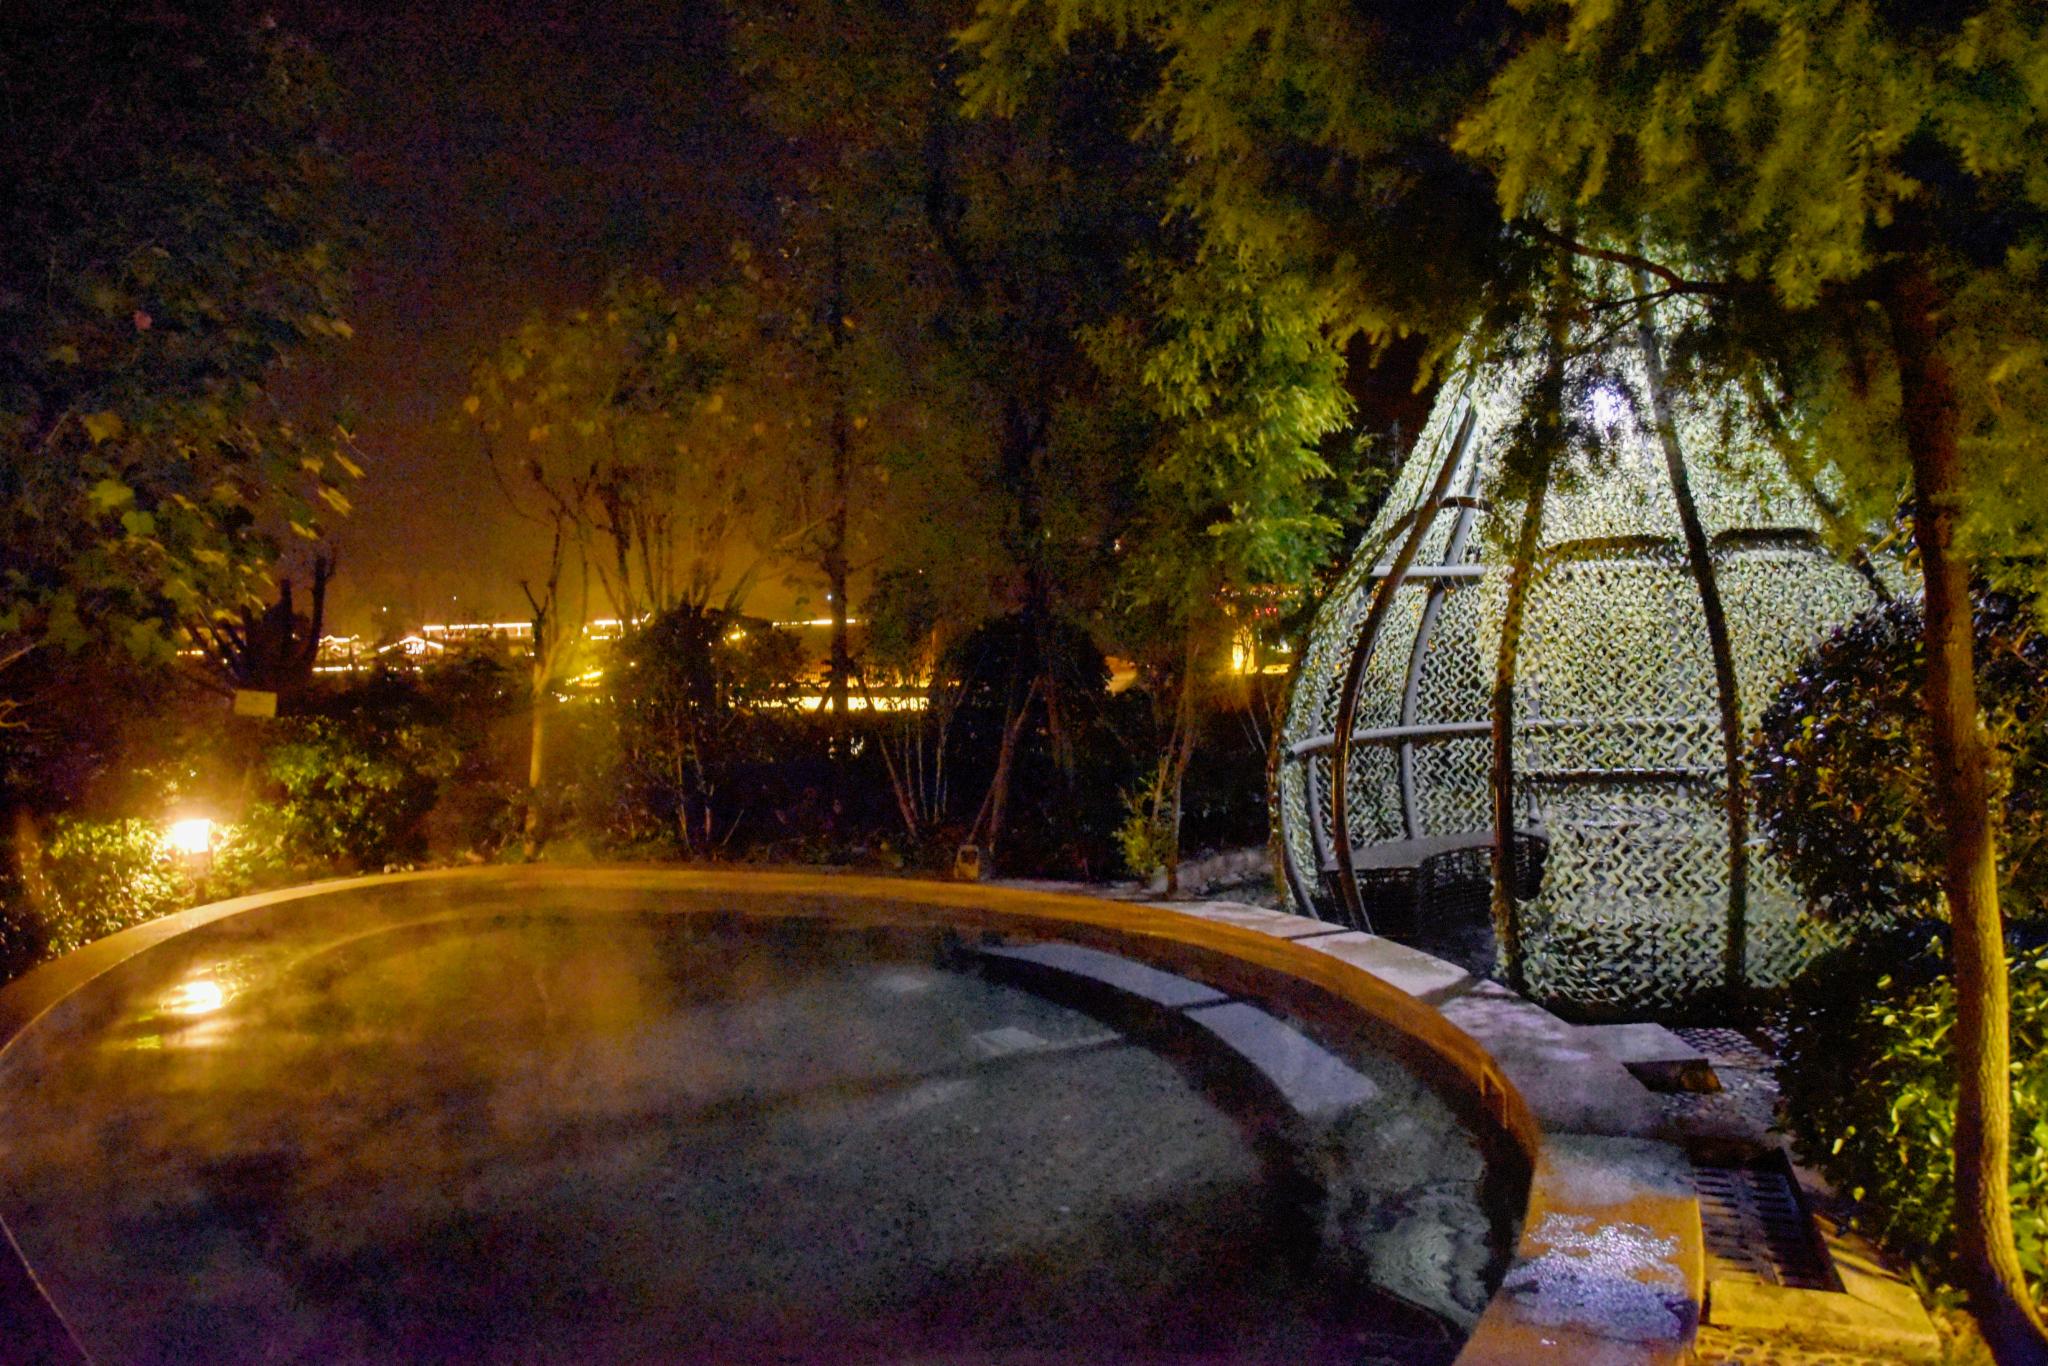 息烽温泉夜景图片